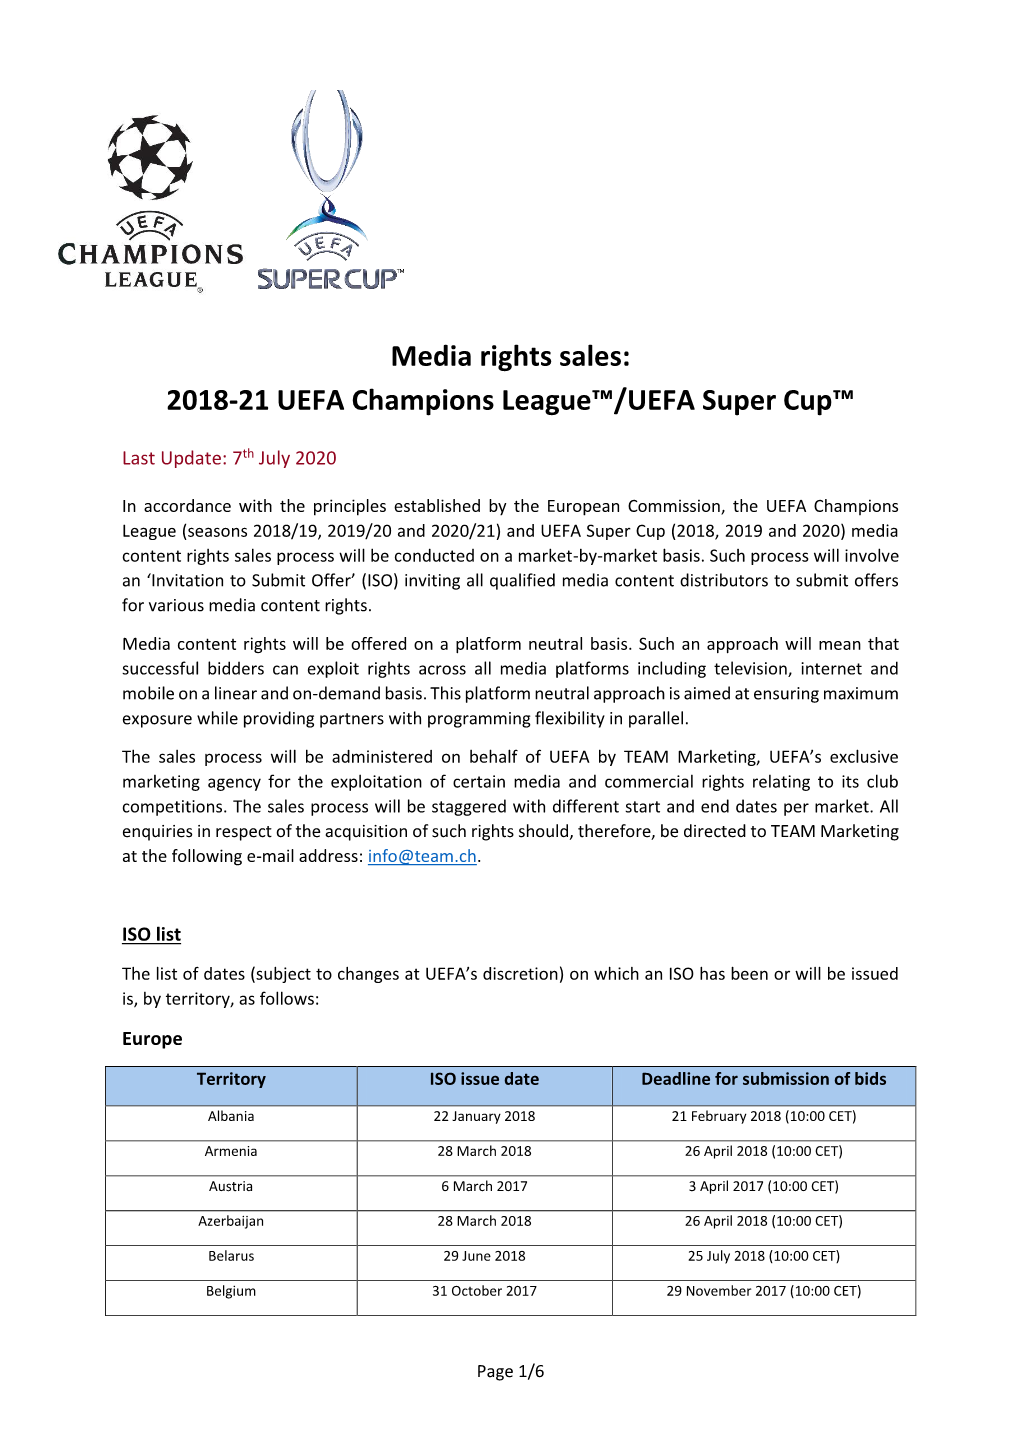 Media Rights Sales: 2018-21 UEFA Champions League™/UEFA Super Cup™